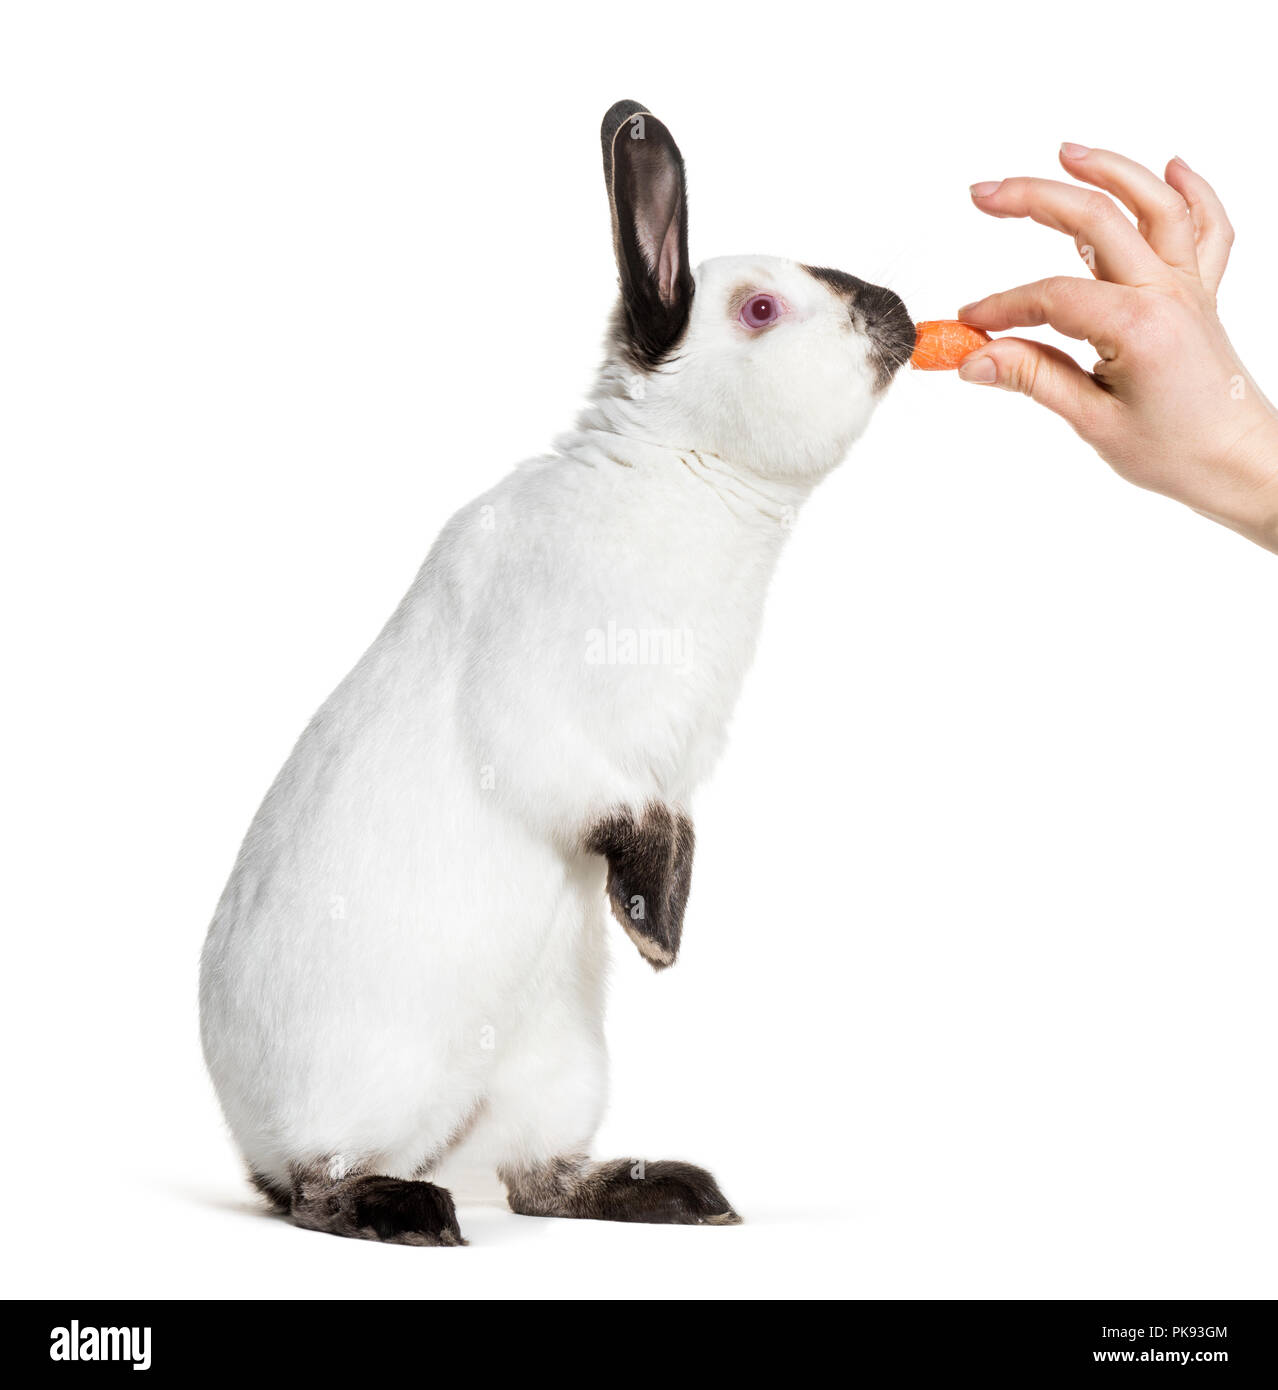 Russo permanente di coniglio contro uno sfondo bianco Foto Stock